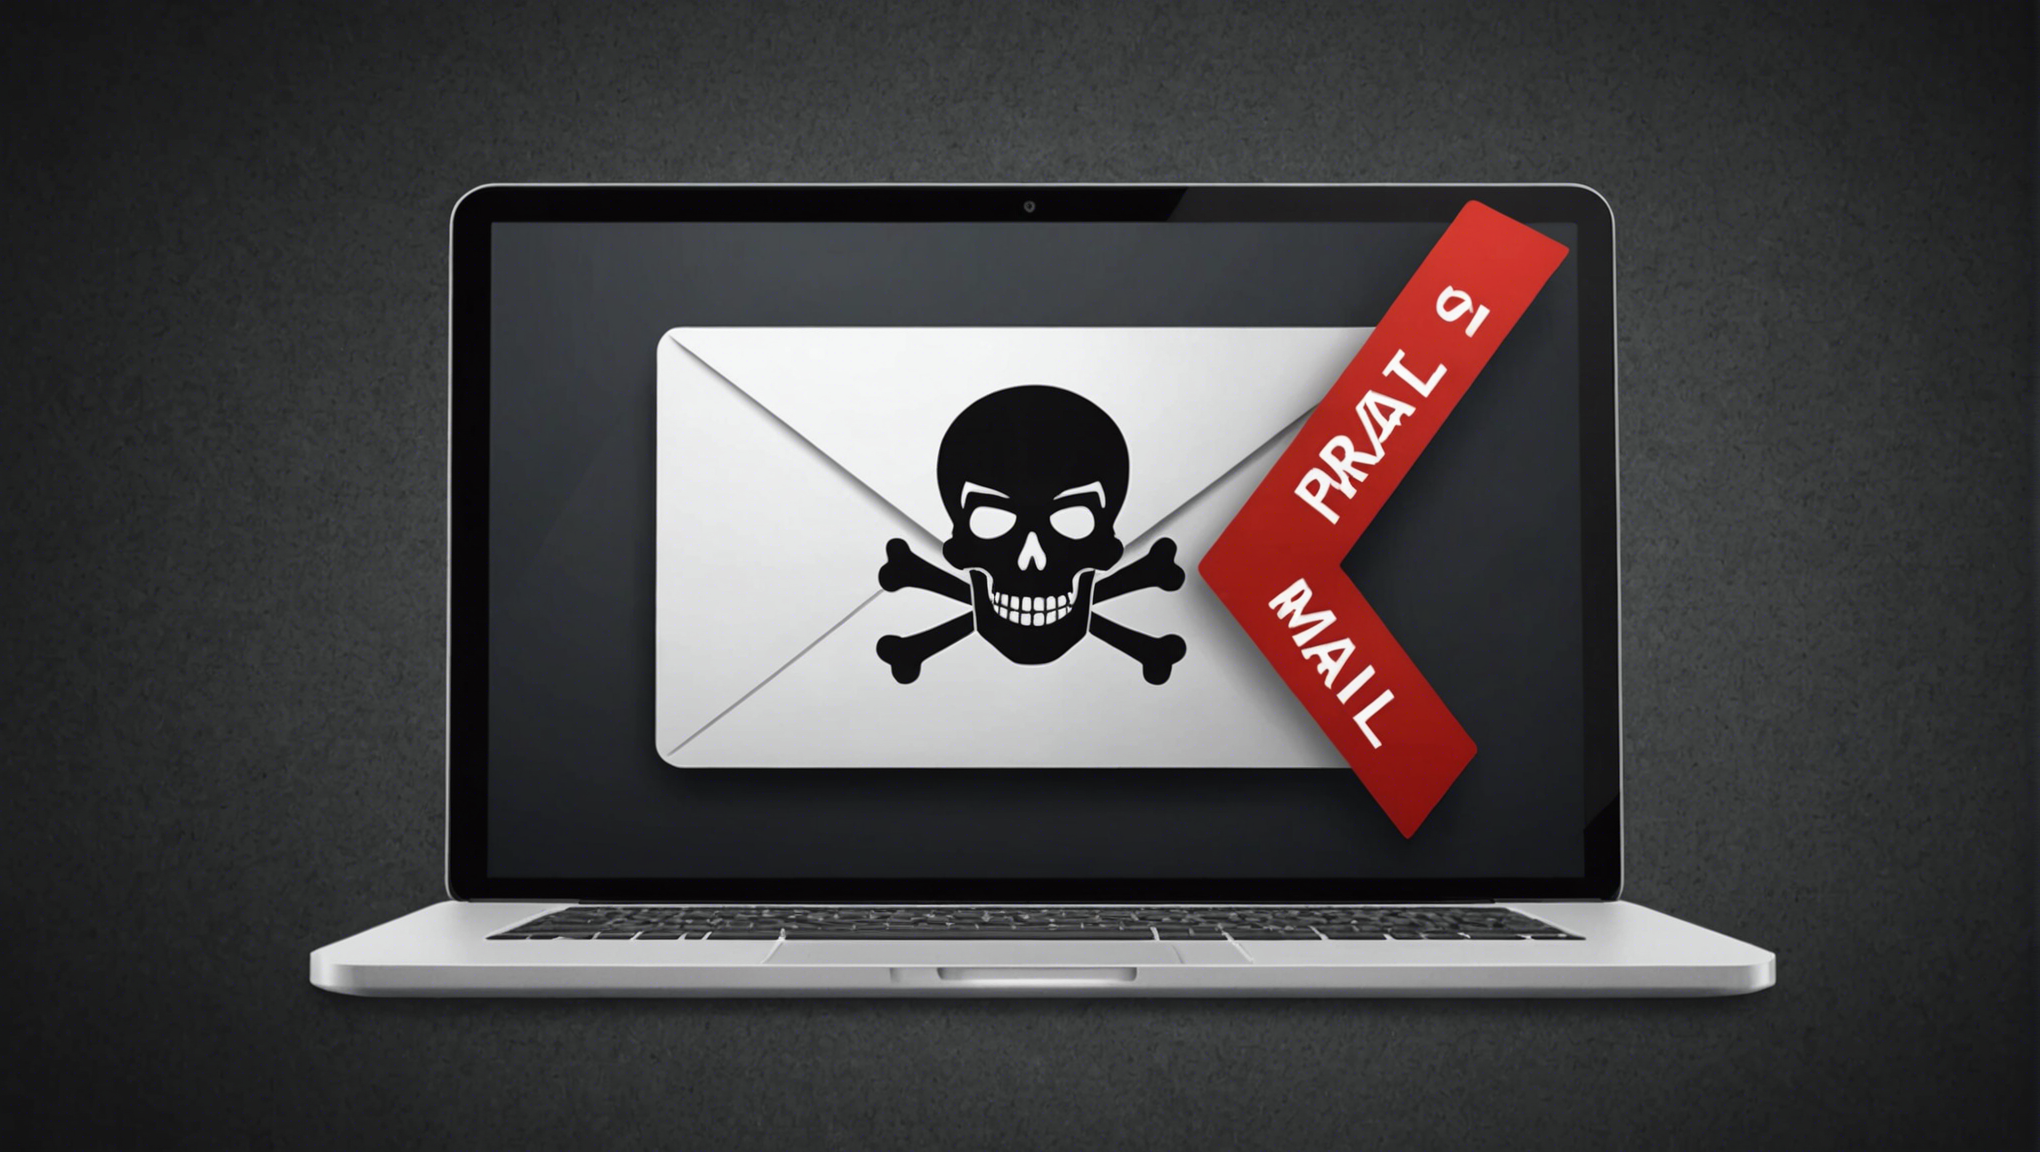 découvrez comment réagir efficacement si vous recevez un mail de piratage. conseils pratiques pour protéger vos données et éviter de devenir une victime des cybercriminels.